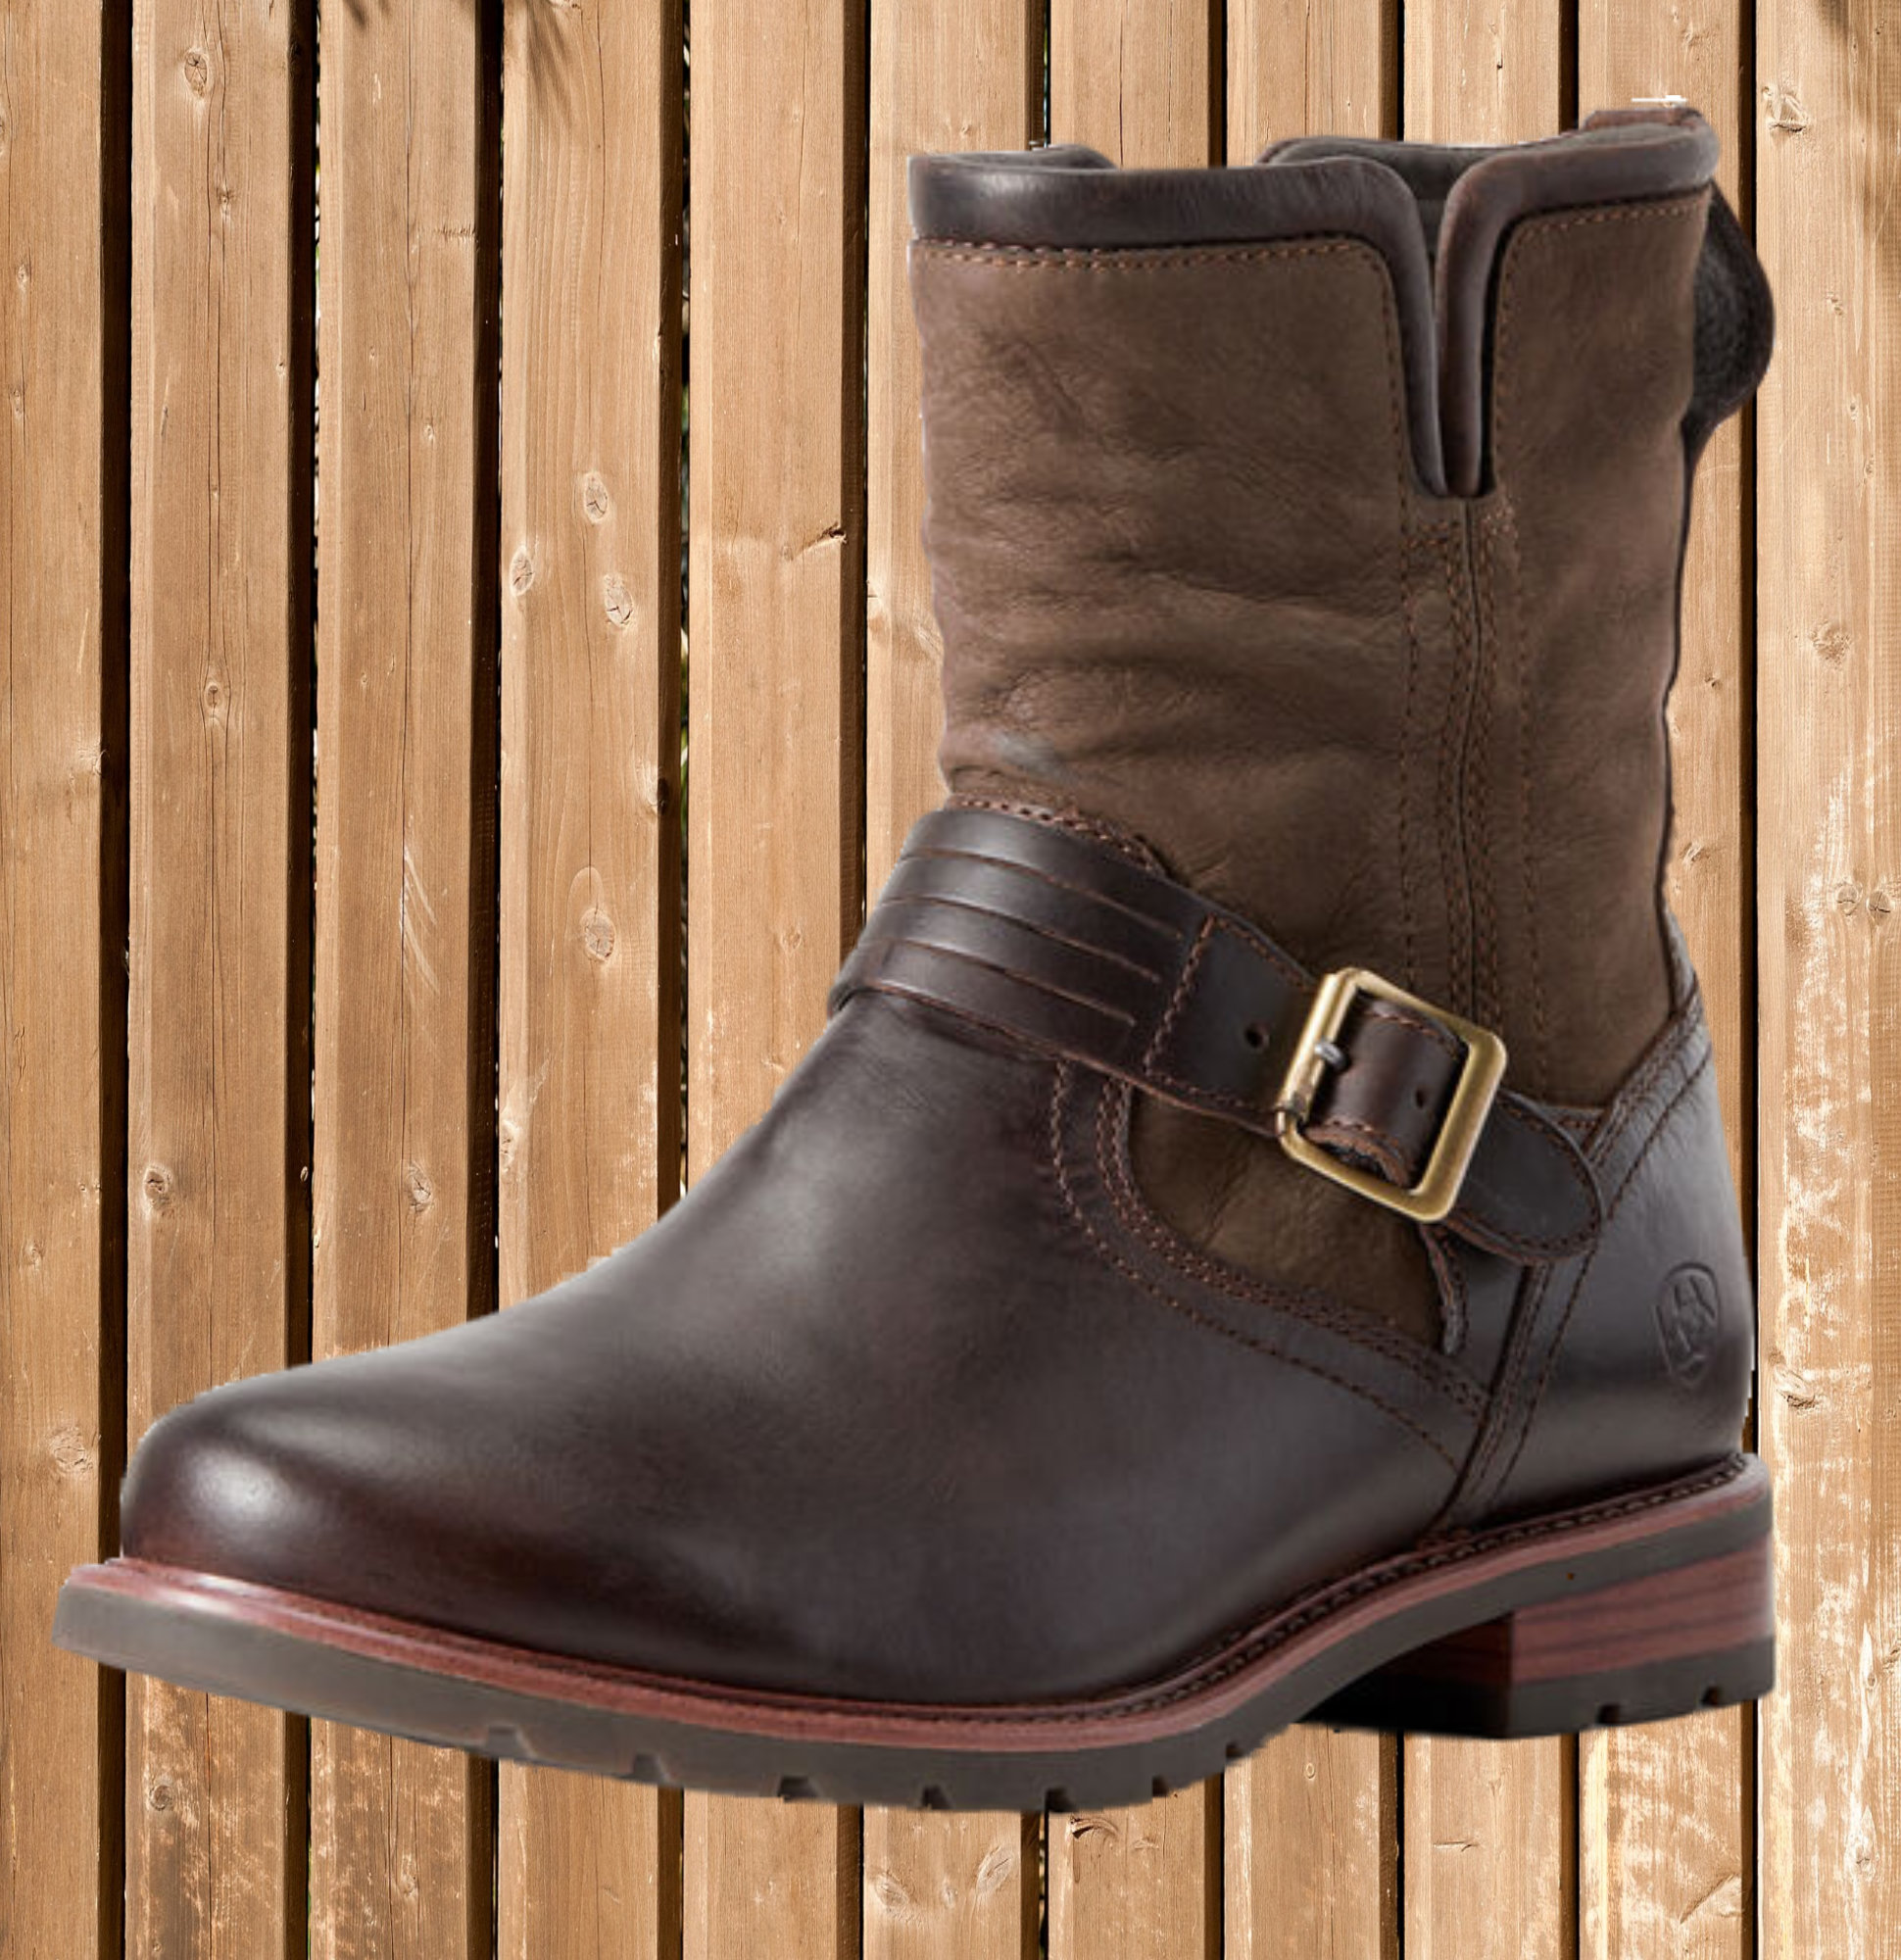 Ariat Savannah Boots, wasserdicht, Country Stiefeletten